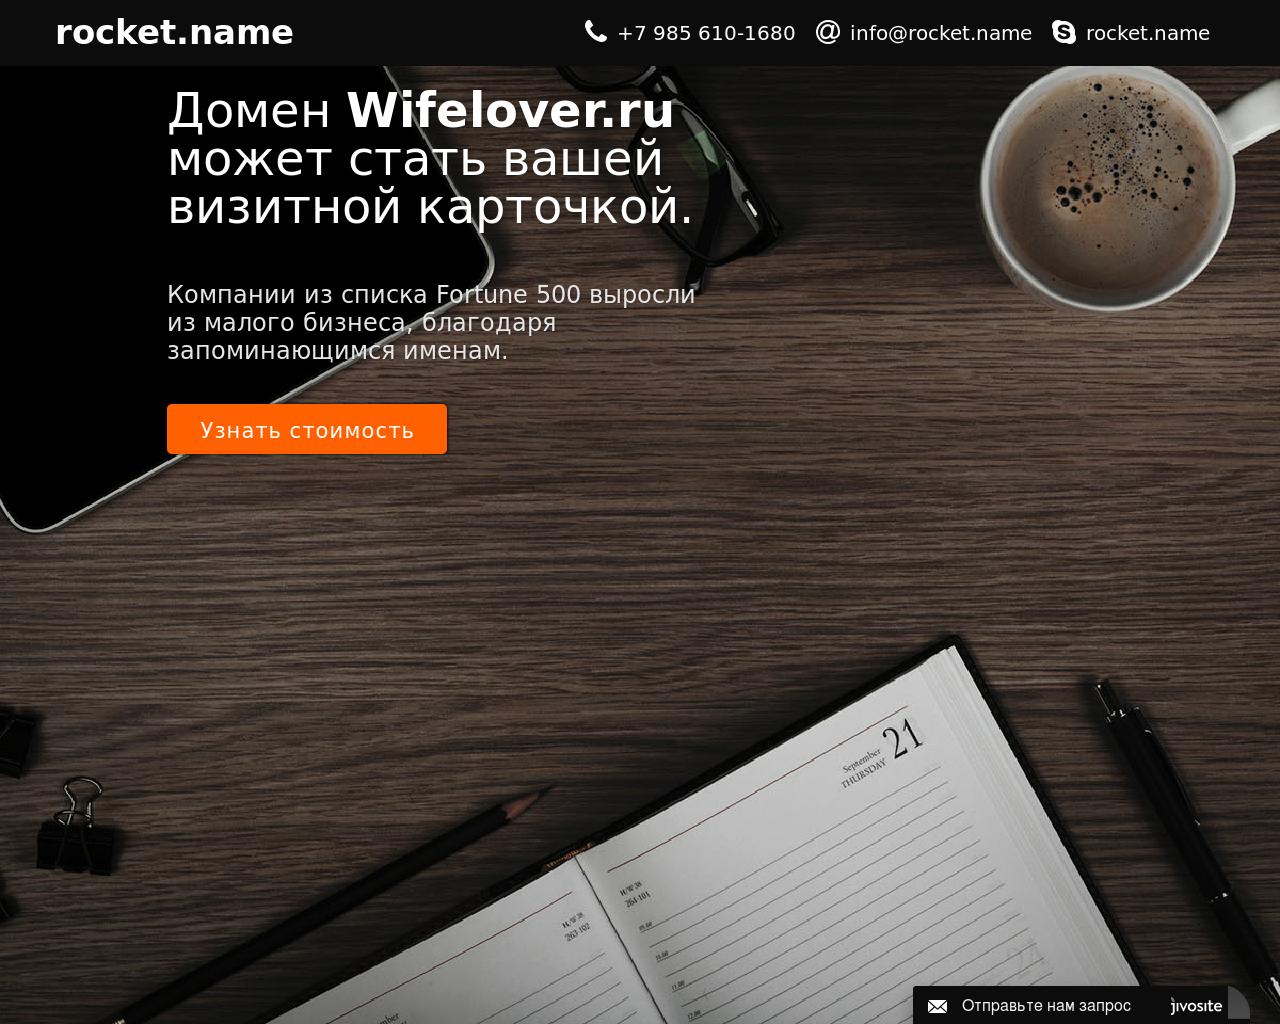 Изображение сайта wifelover.ru в разрешении 1280x1024